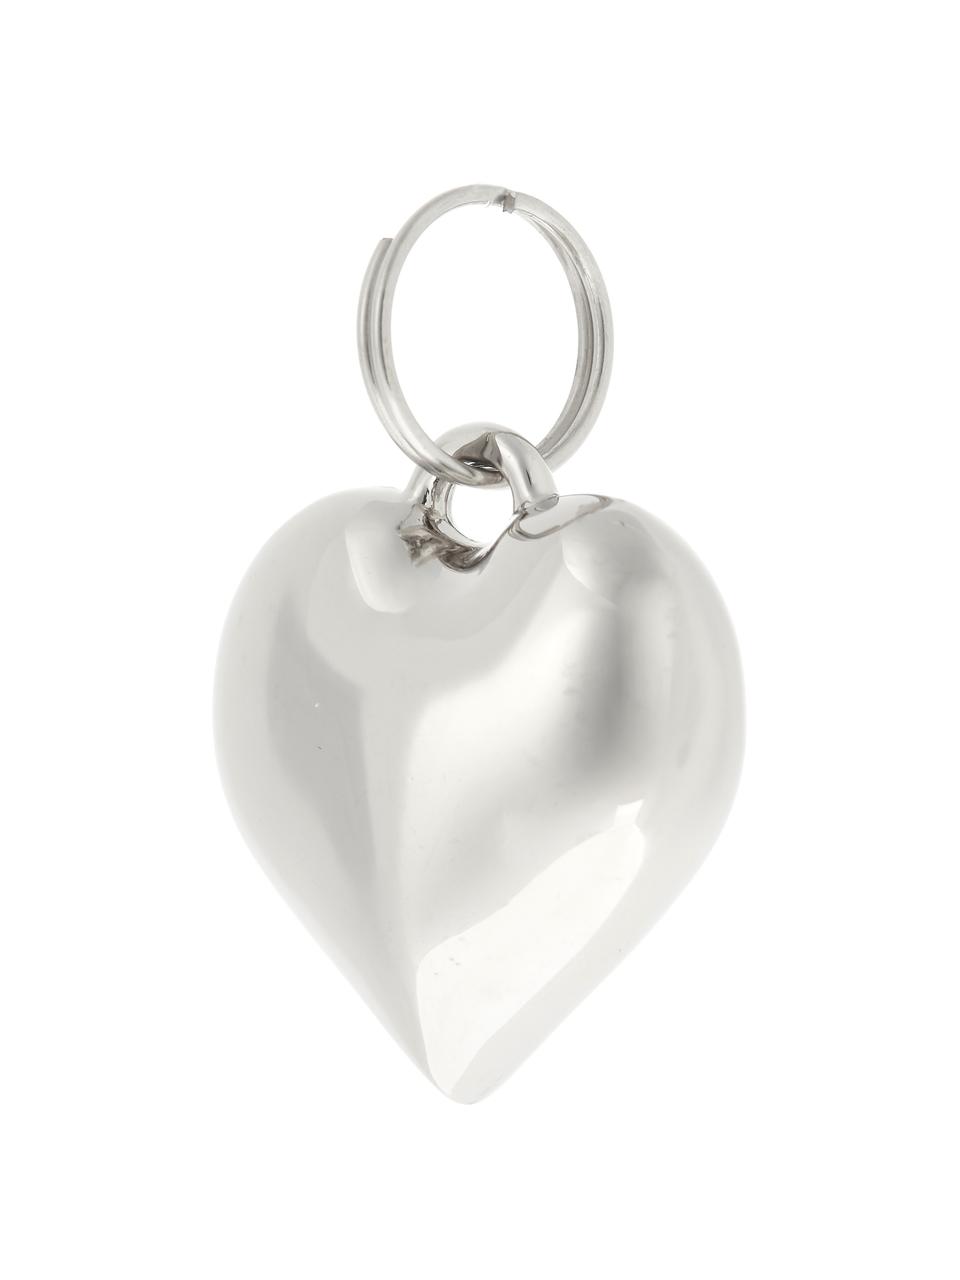 Dárkový přívěsek Charm Heart, 6 ks, Kov, Stříbrná, Ø 2 cm, V 3 cm